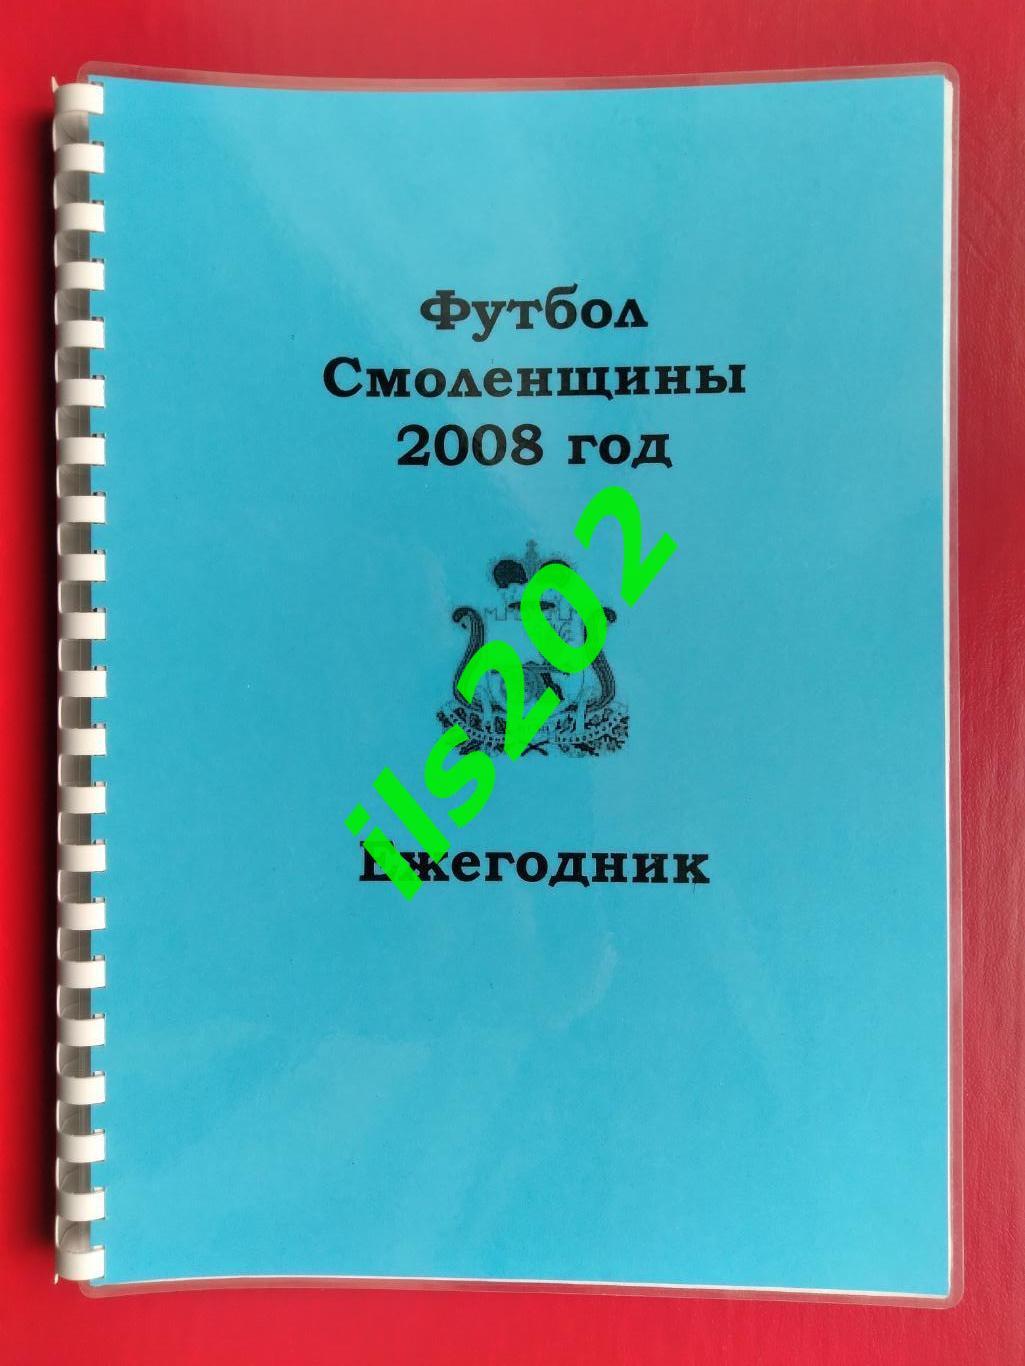 книга Футбол Смоленщины 2008 Смоленск ежегодник авторская